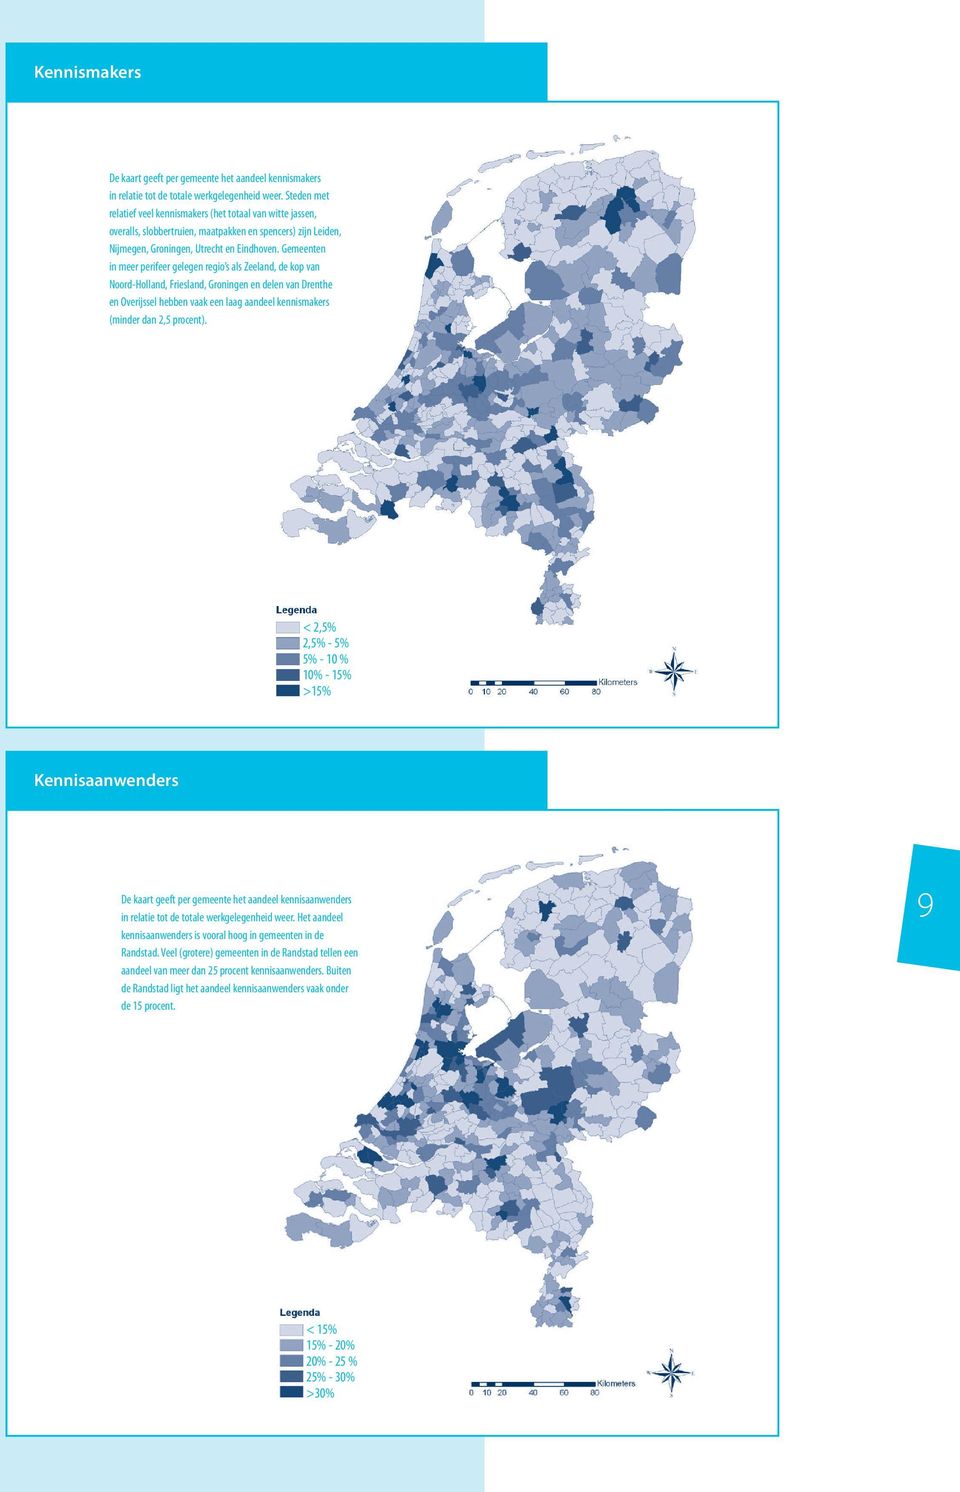 Gemeenten in meer perifeer gelegen regio s als Zeeland, de kop van Noord-Holland, Friesland, Groningen en delen van Drenthe en Overijssel hebben vaak een laag aandeel kennismakers (minder dan 2,5